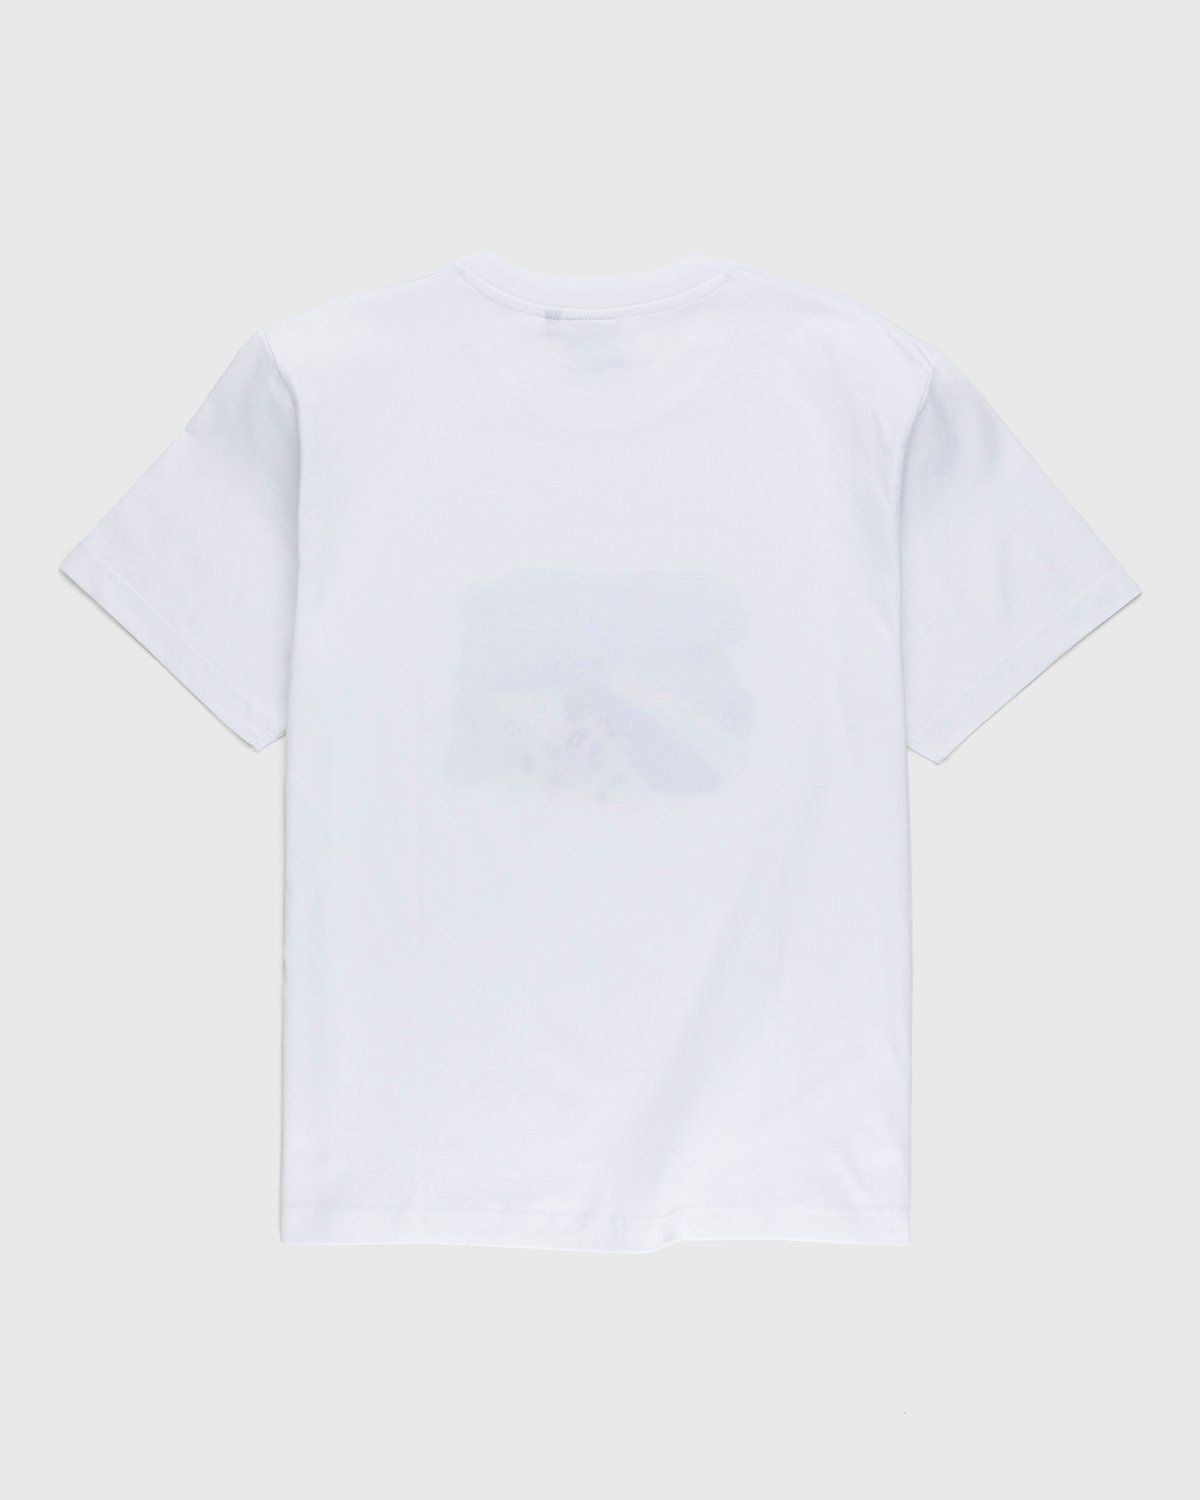 Carne Bollente – Cunni sur la Pelouse T-Shirt White - T-Shirts - White - Image 2